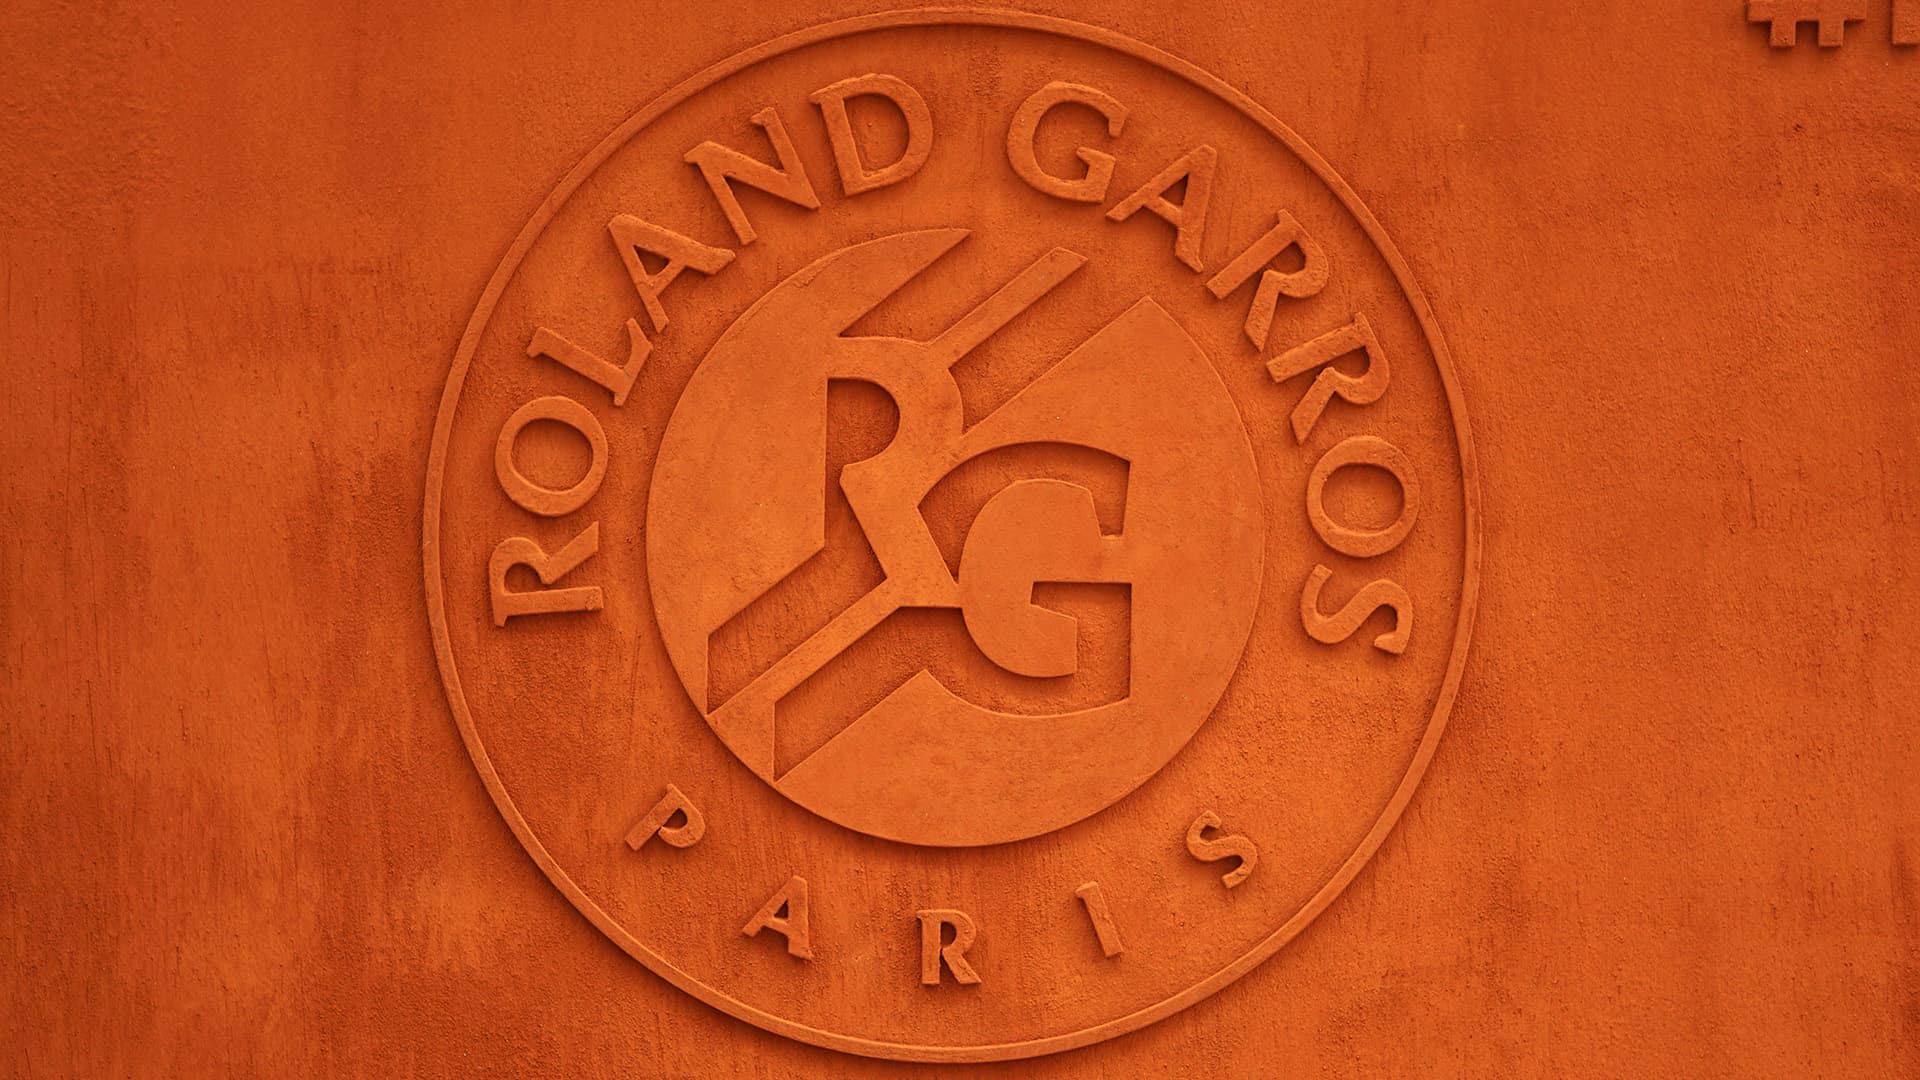 The famous Roland Garros crest